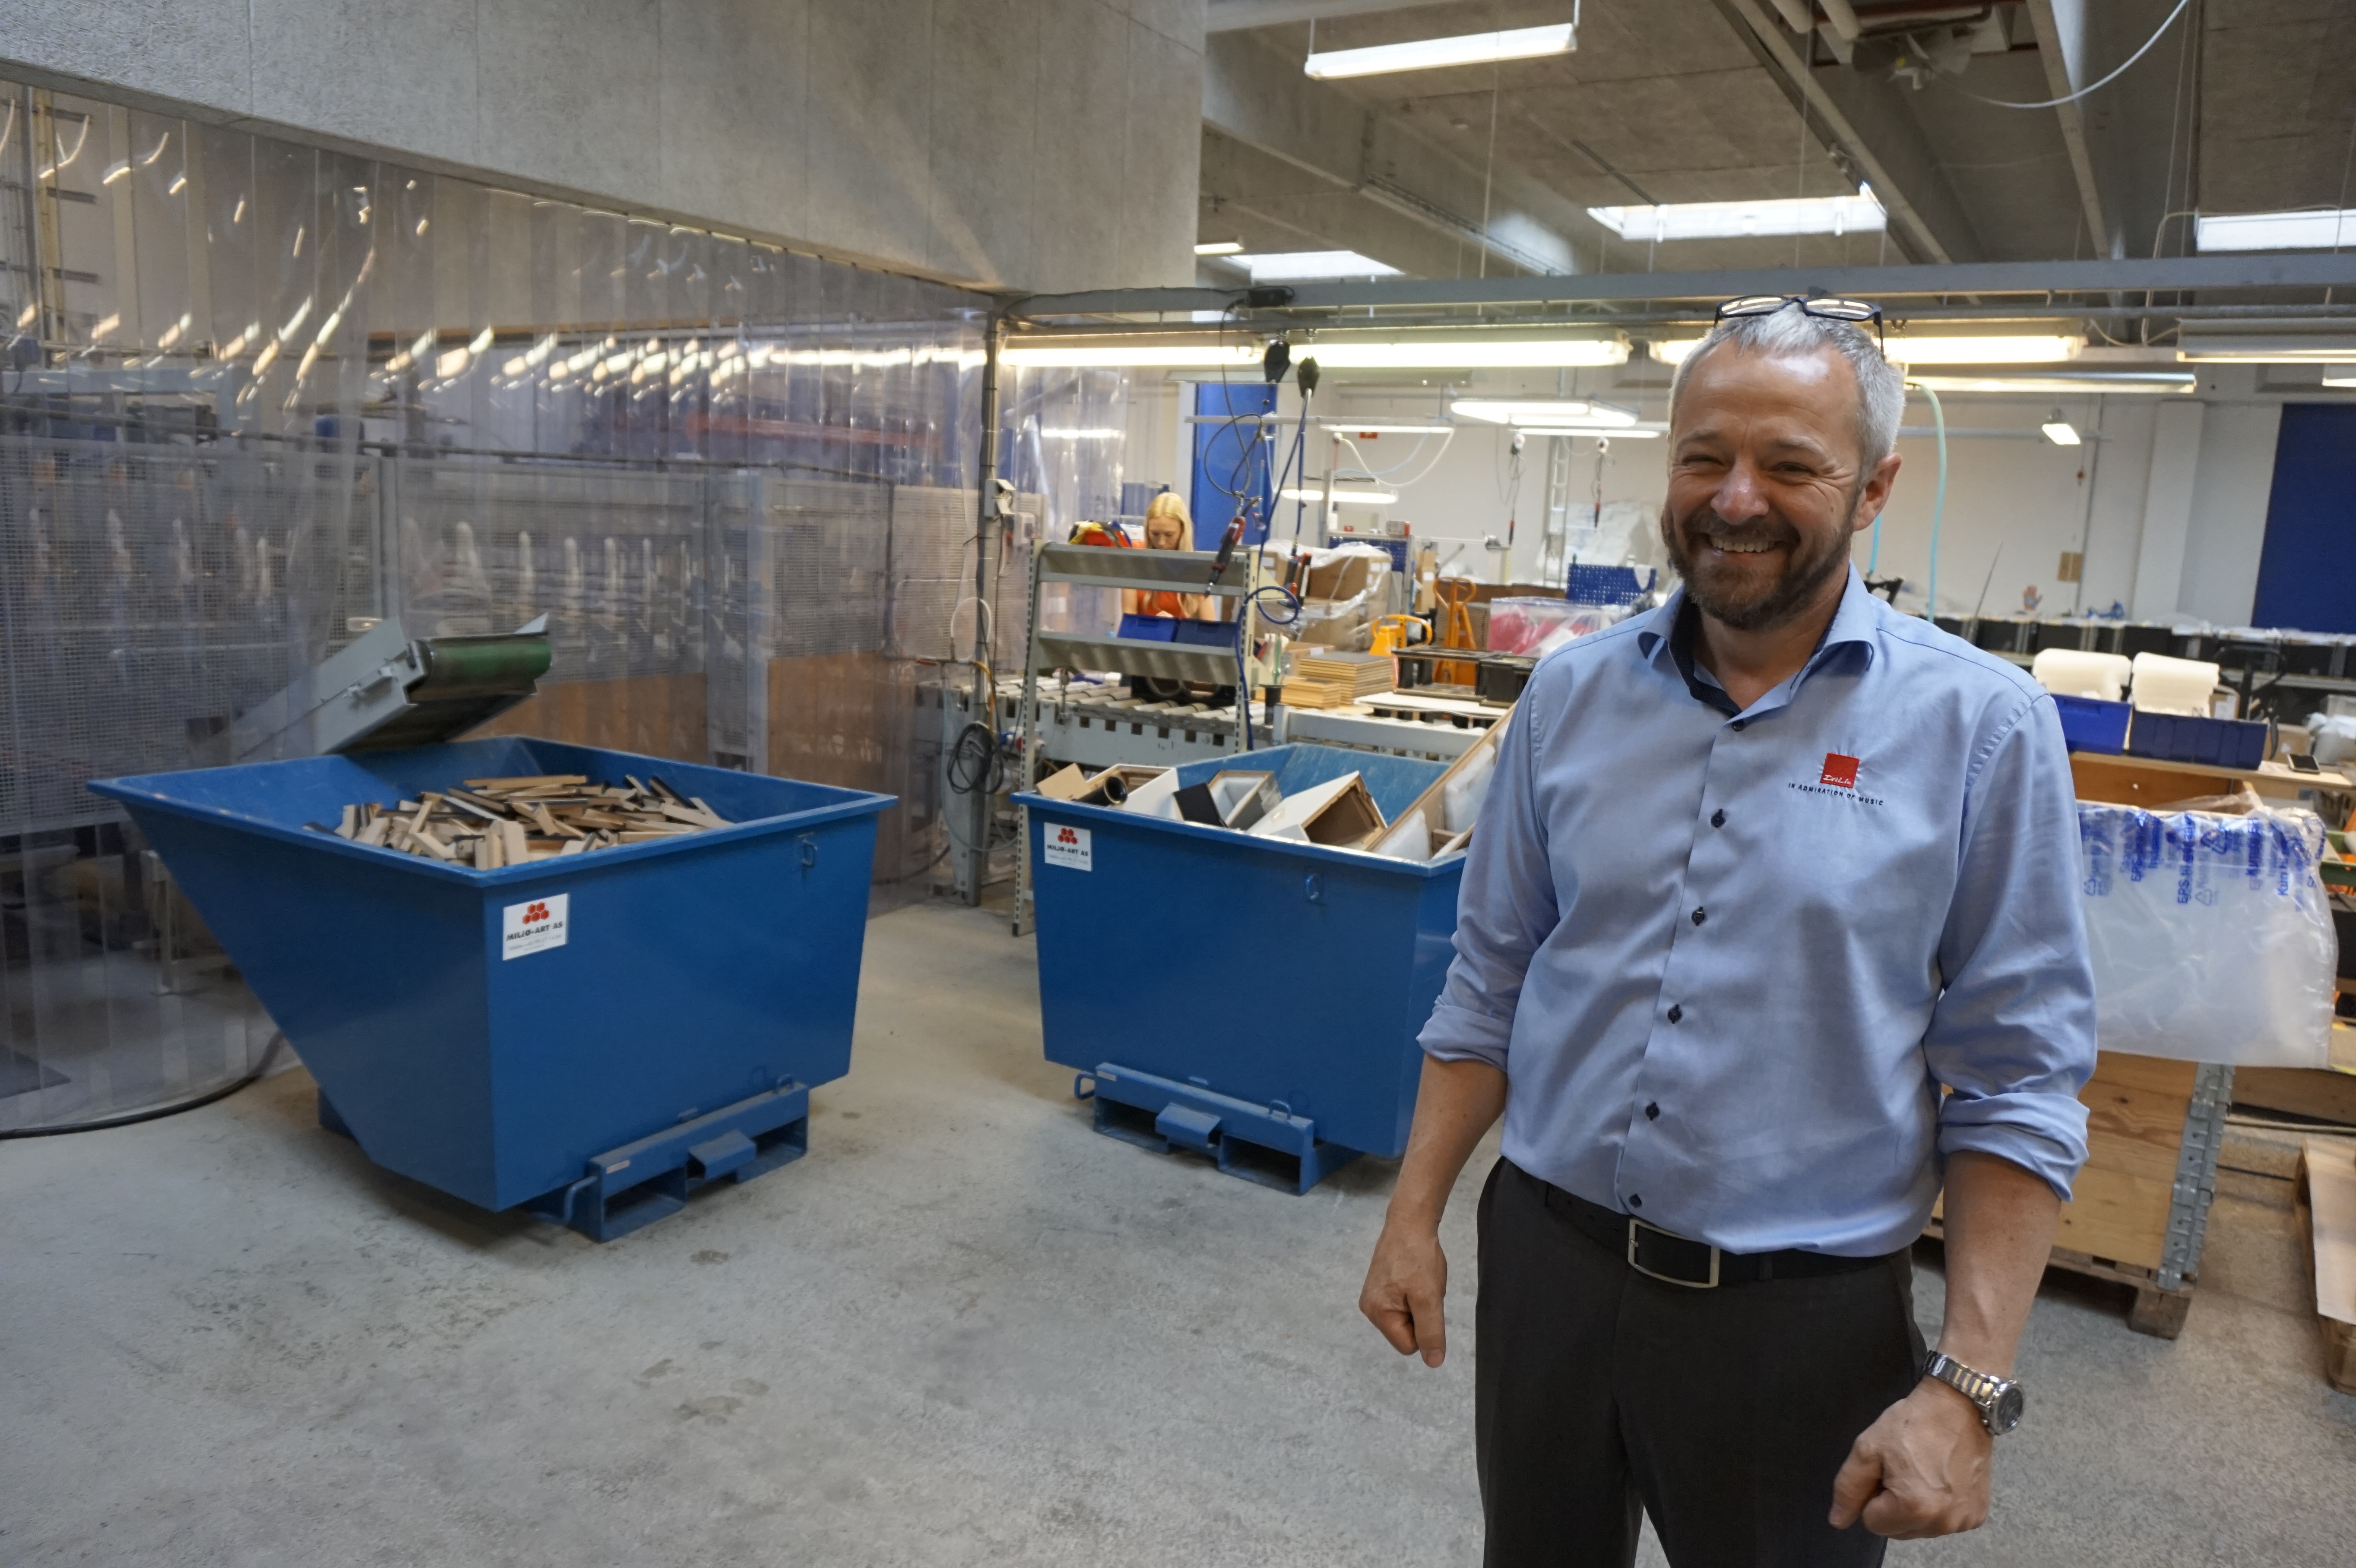 DALI-chefen Lars Worre visar runt på fabriken. I bakgrunden syns monteringslinjen med robotutskurna och -limmade kabinett. Foto: John Alex Hvidlykke